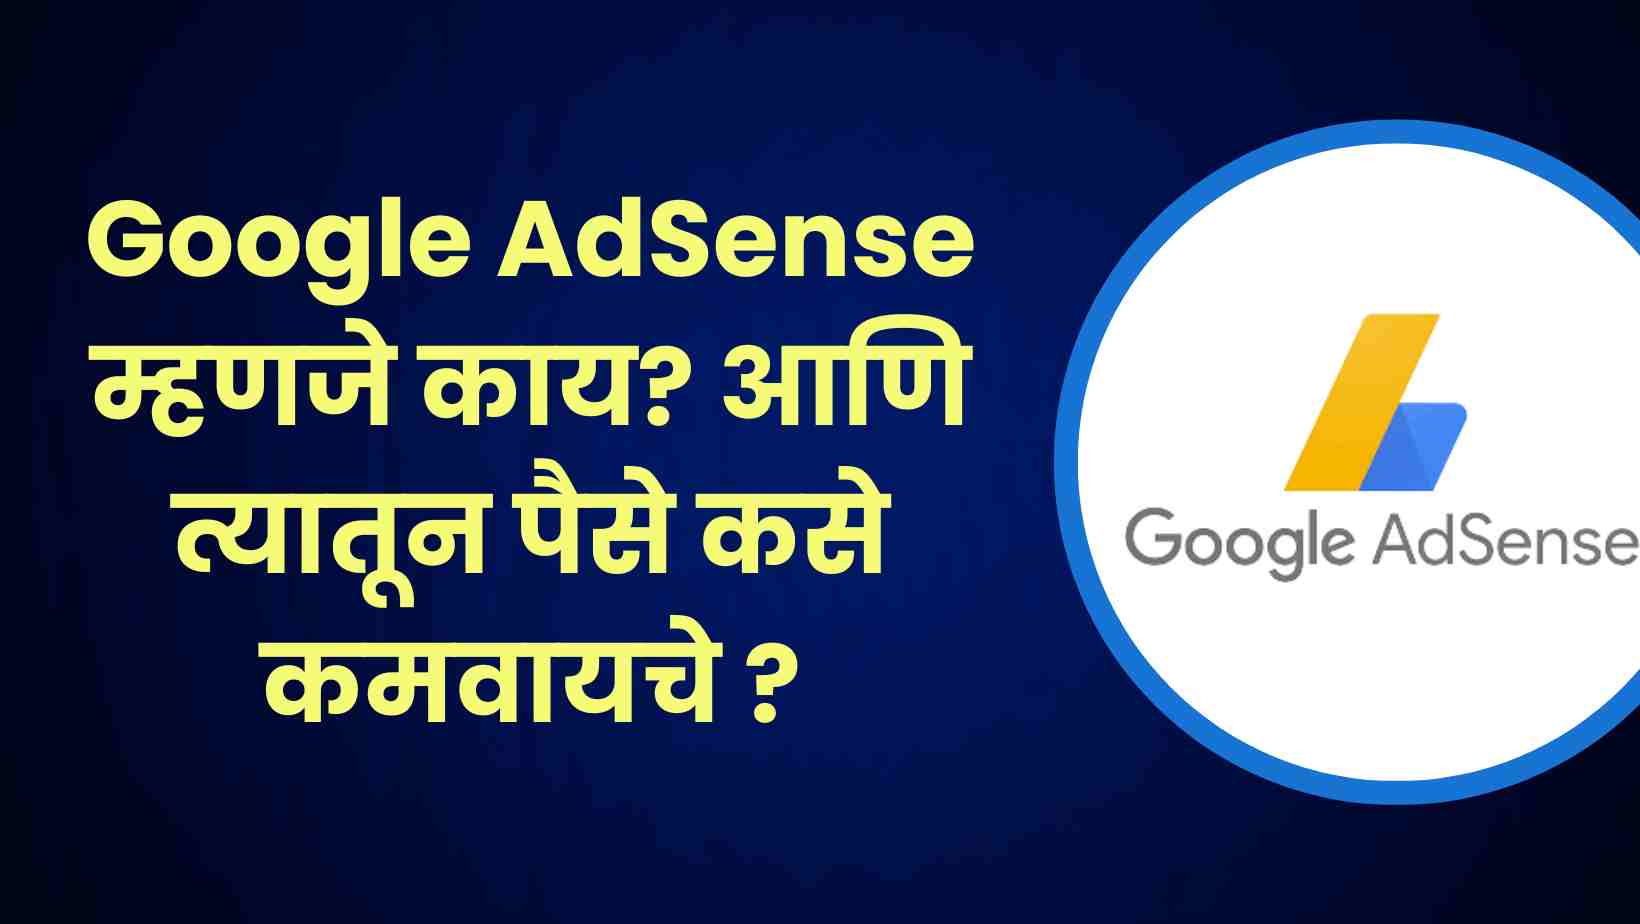 Google AdSense म्हणजे काय आणि त्यातून पैसे कसे कमवायचे -